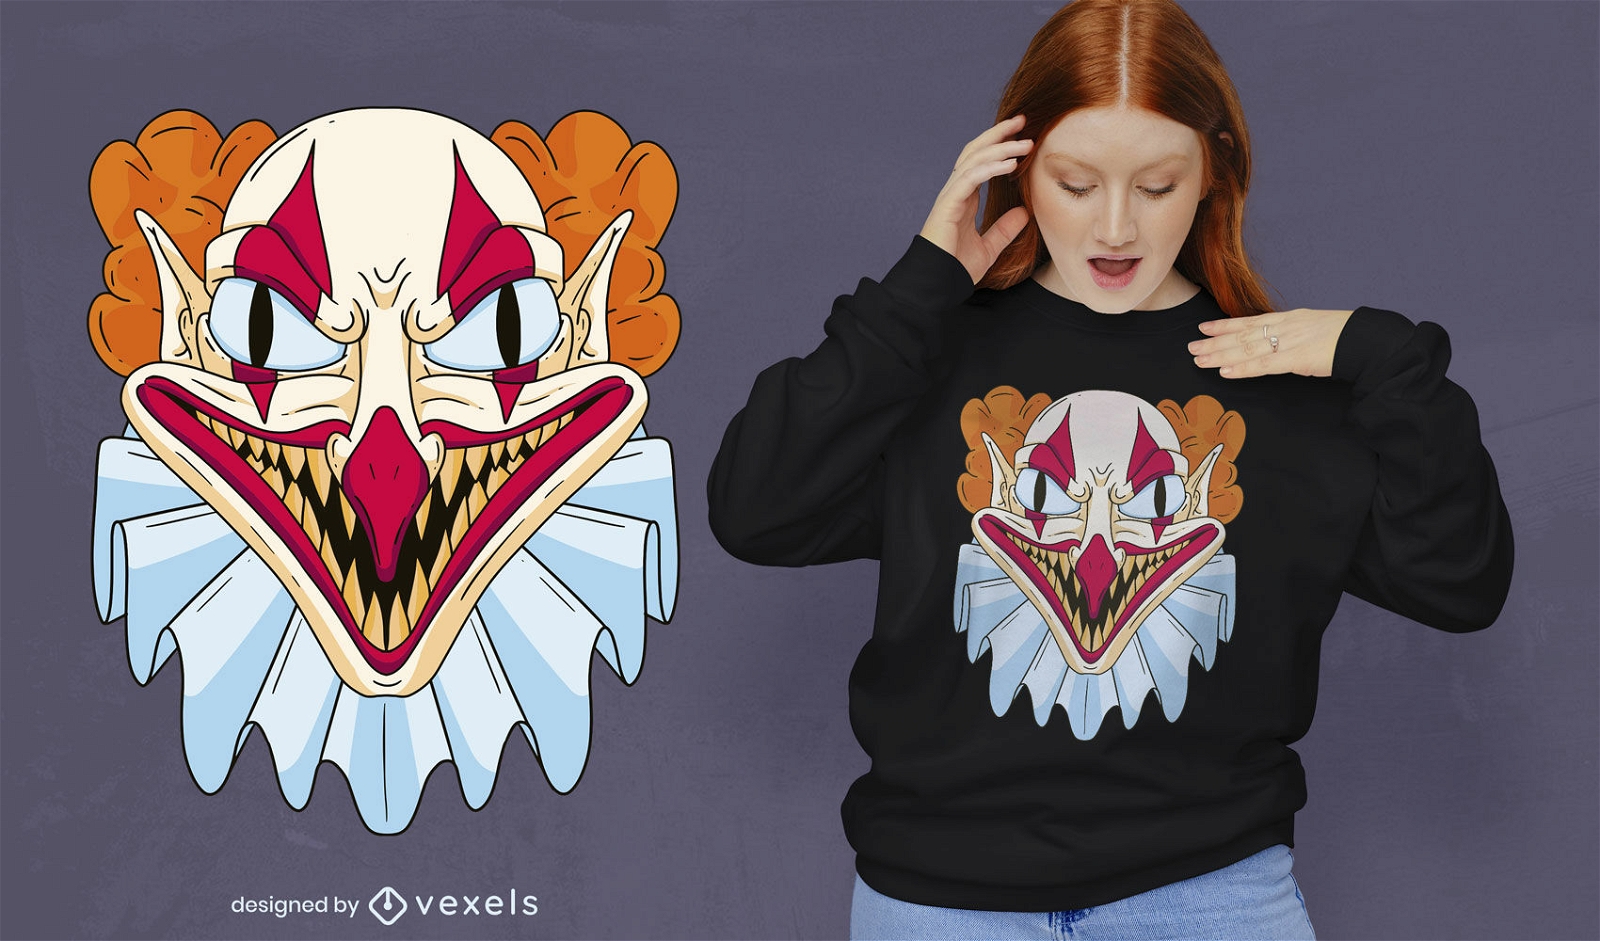 Gruseliges Halloween-Clown-T-Shirt-Design